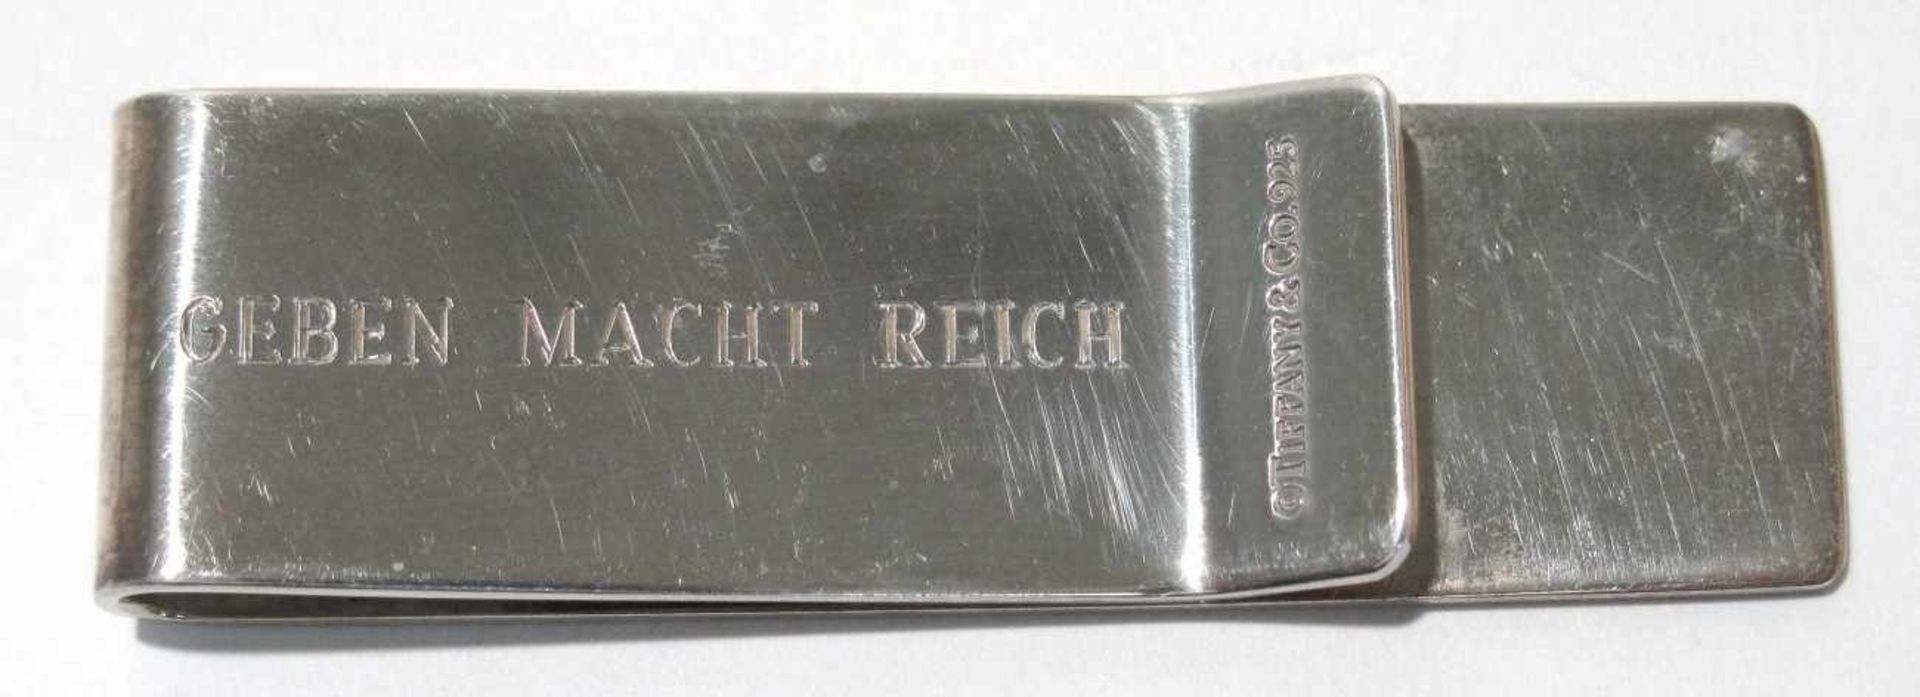 Geldklammer Tiffany & Co. Silber, Marken (925, T&CO). Graviert "Geben macht reich", u.a. L. 6 cm.